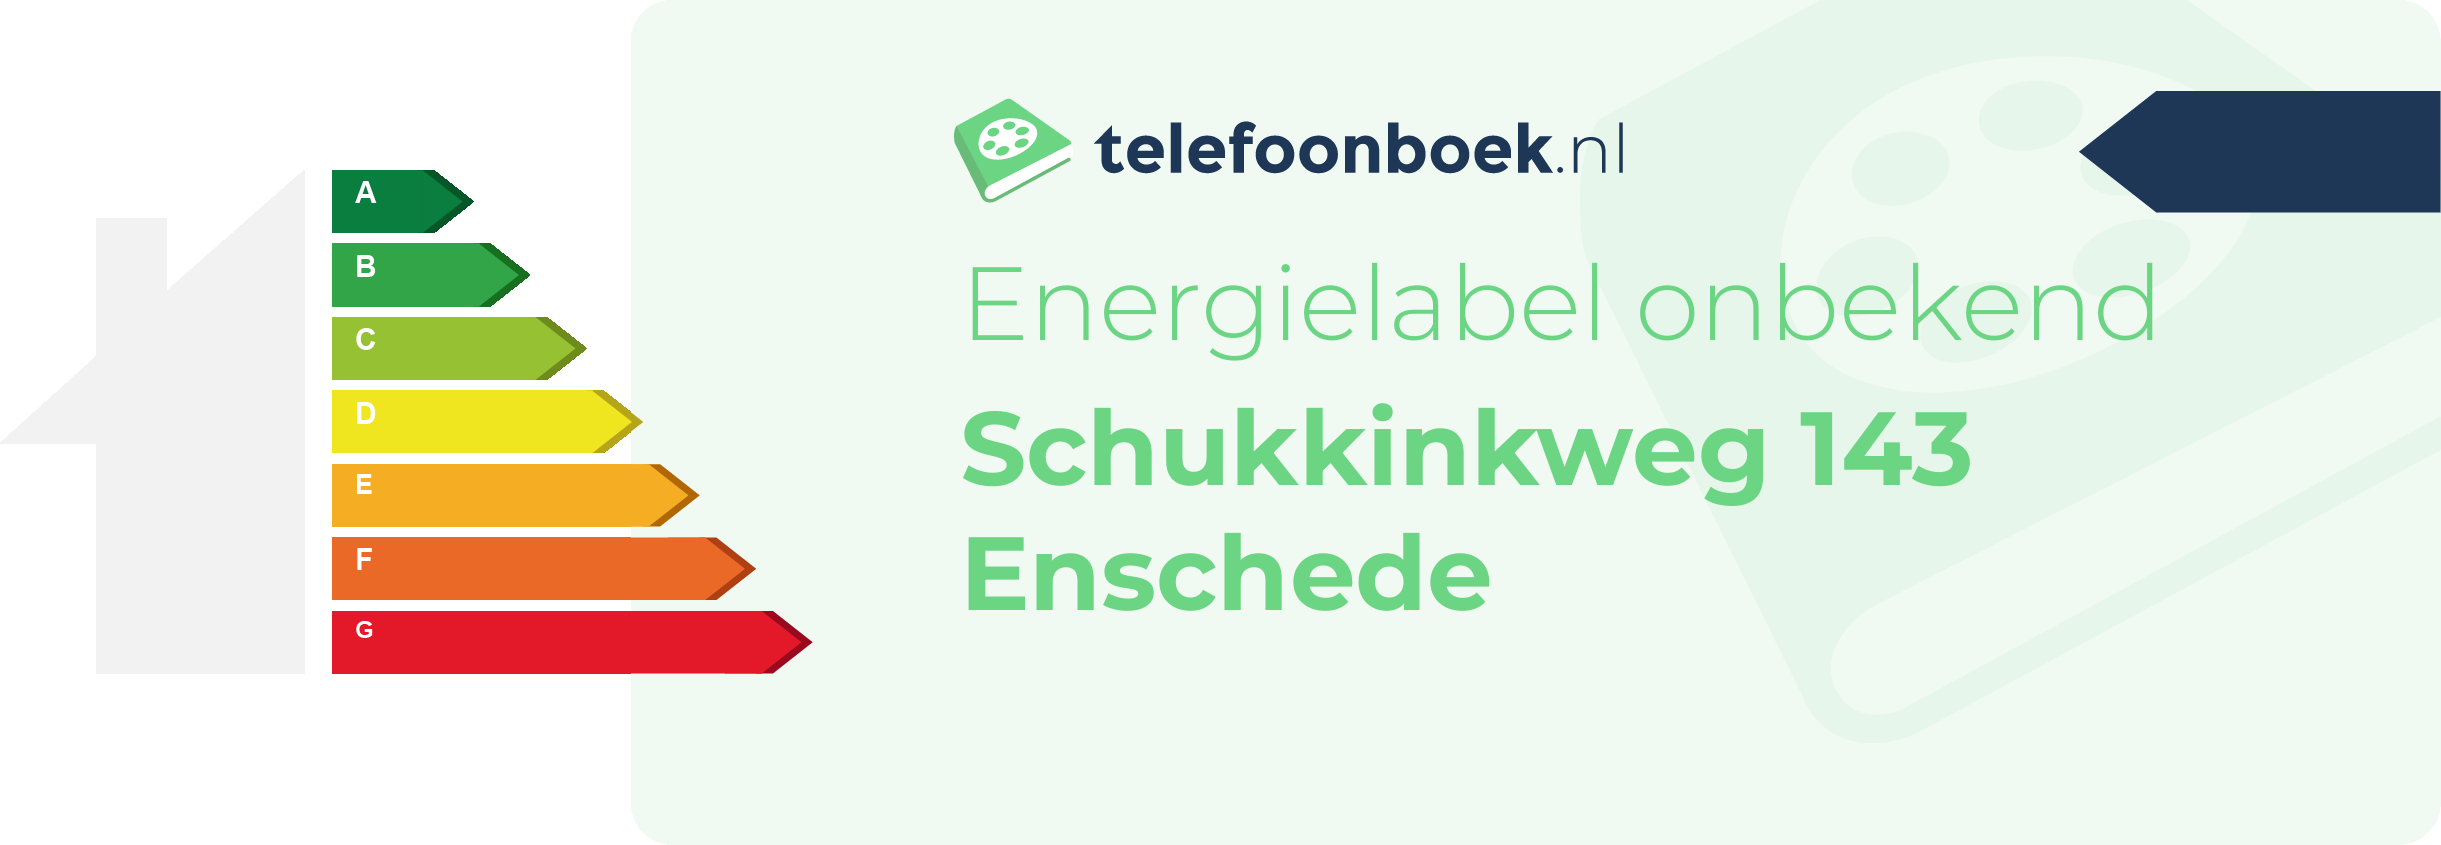 Energielabel Schukkinkweg 143 Enschede